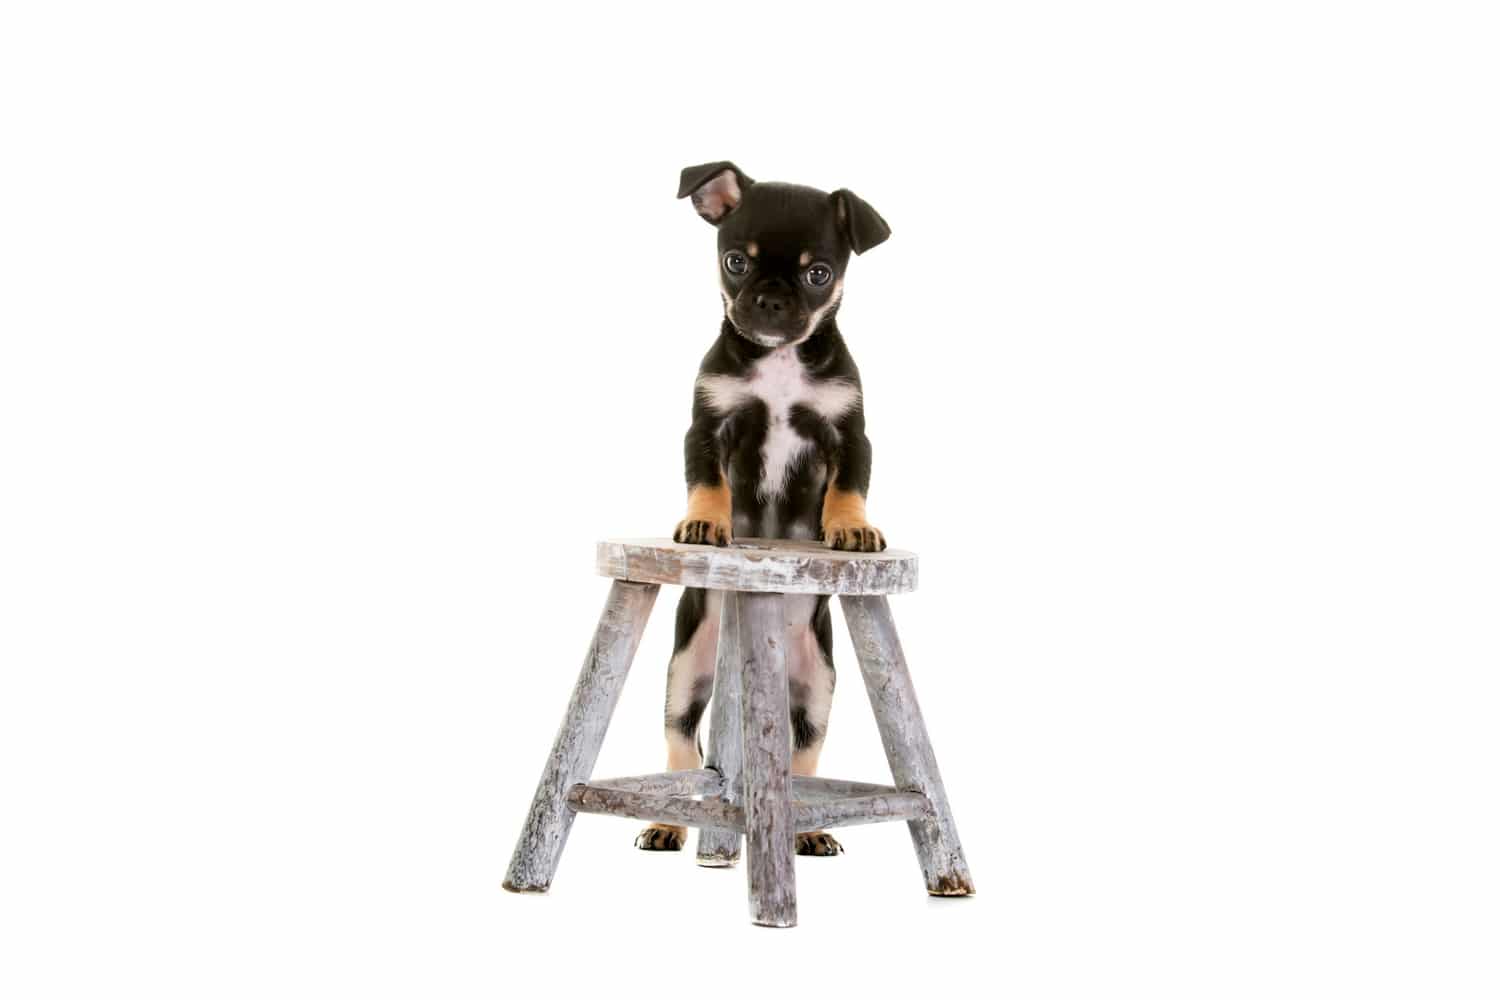 Chug dog stood on a small stool